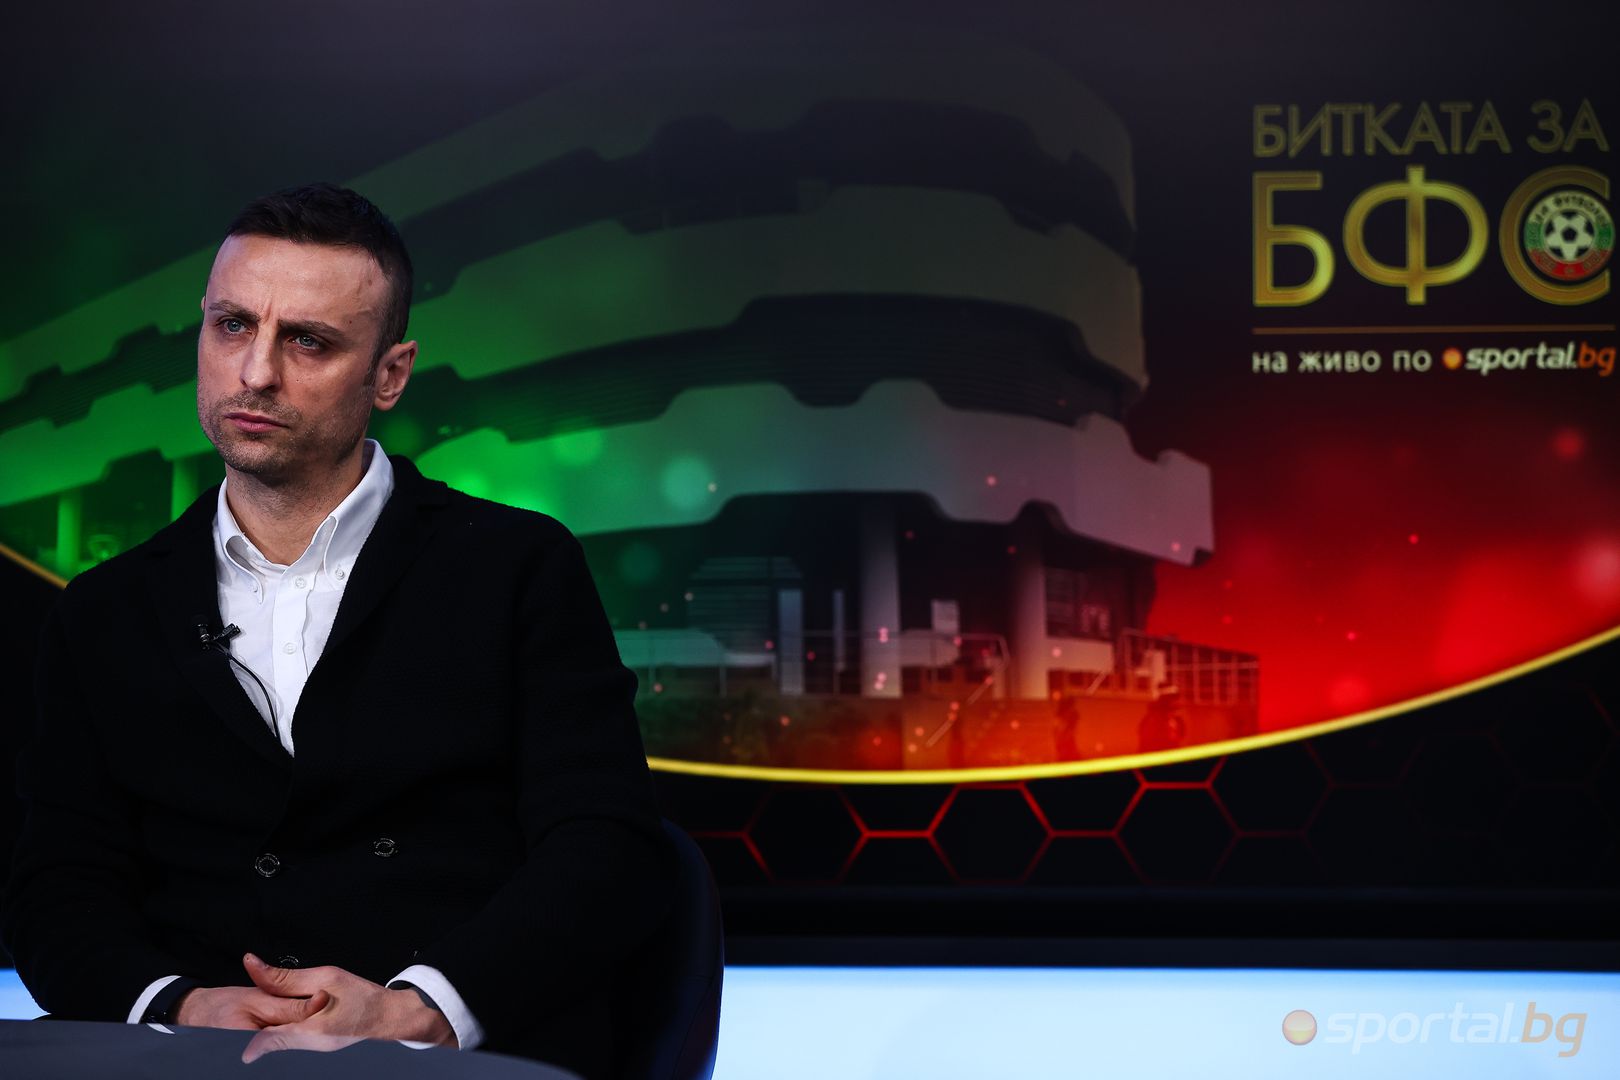 "Битката за БФС" гостуват Димитър Бербатов, Стилян Петров и Мартин Петров